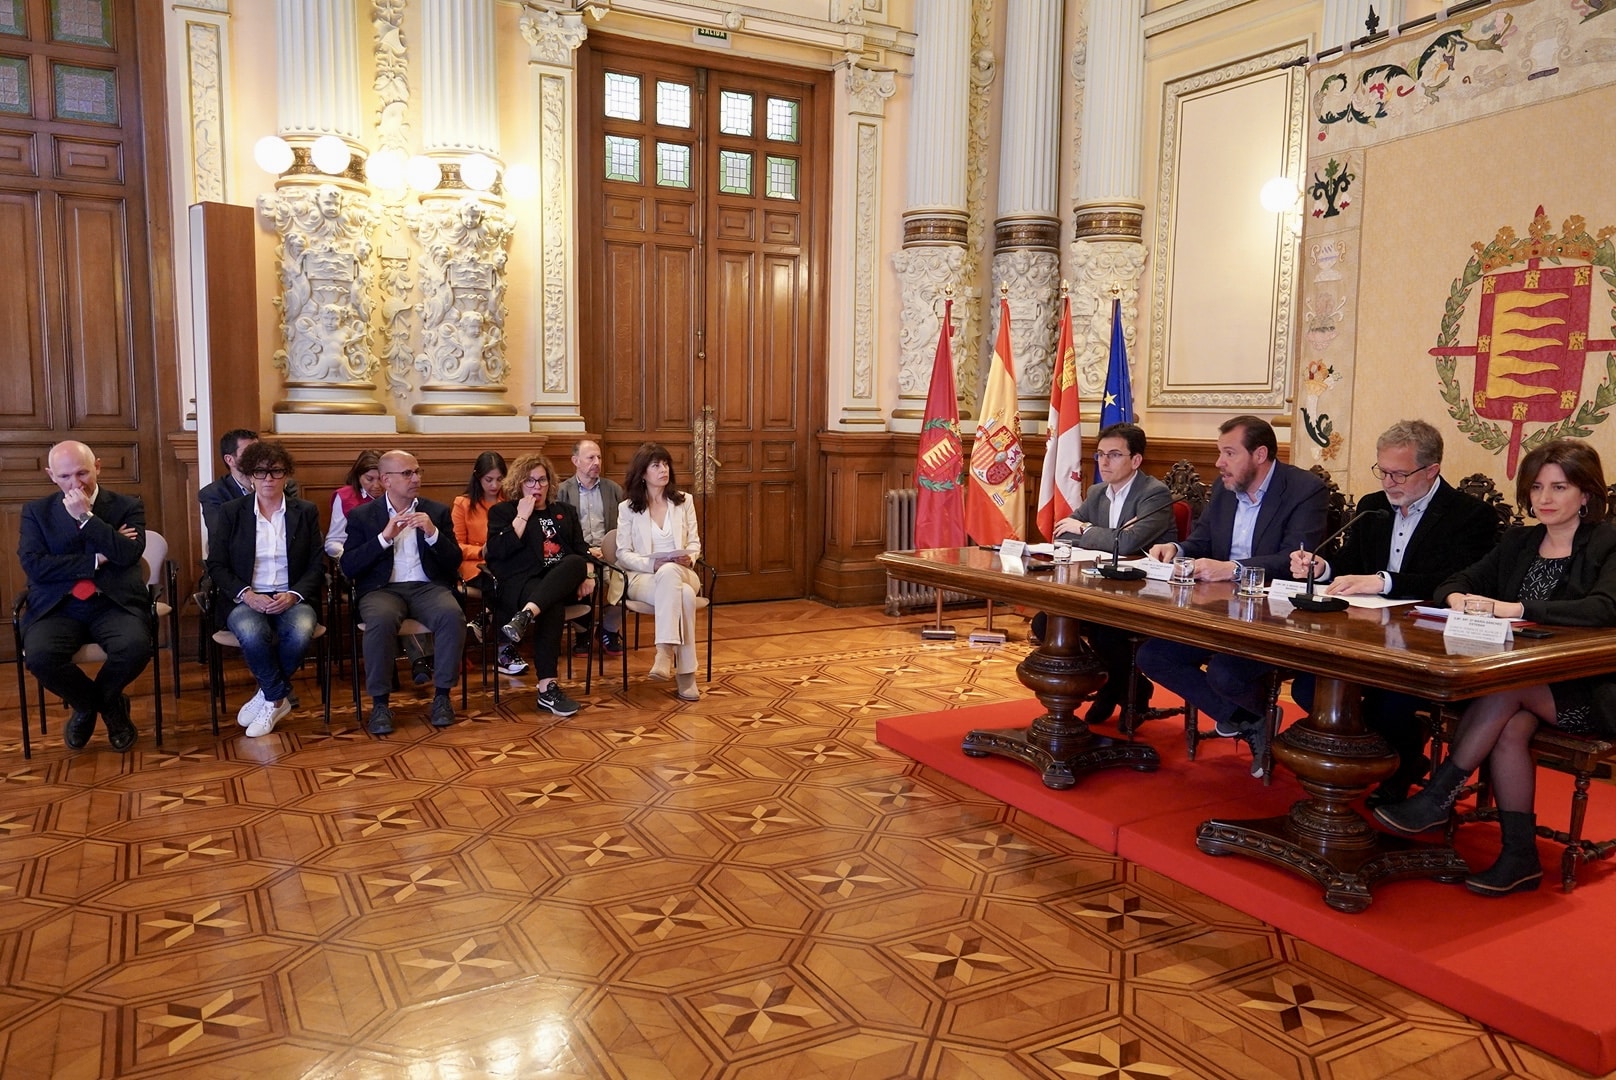 Remunicipalización de servicios e incremento del patrimonio público, balance de la coalición de Gobierno en Valladolid